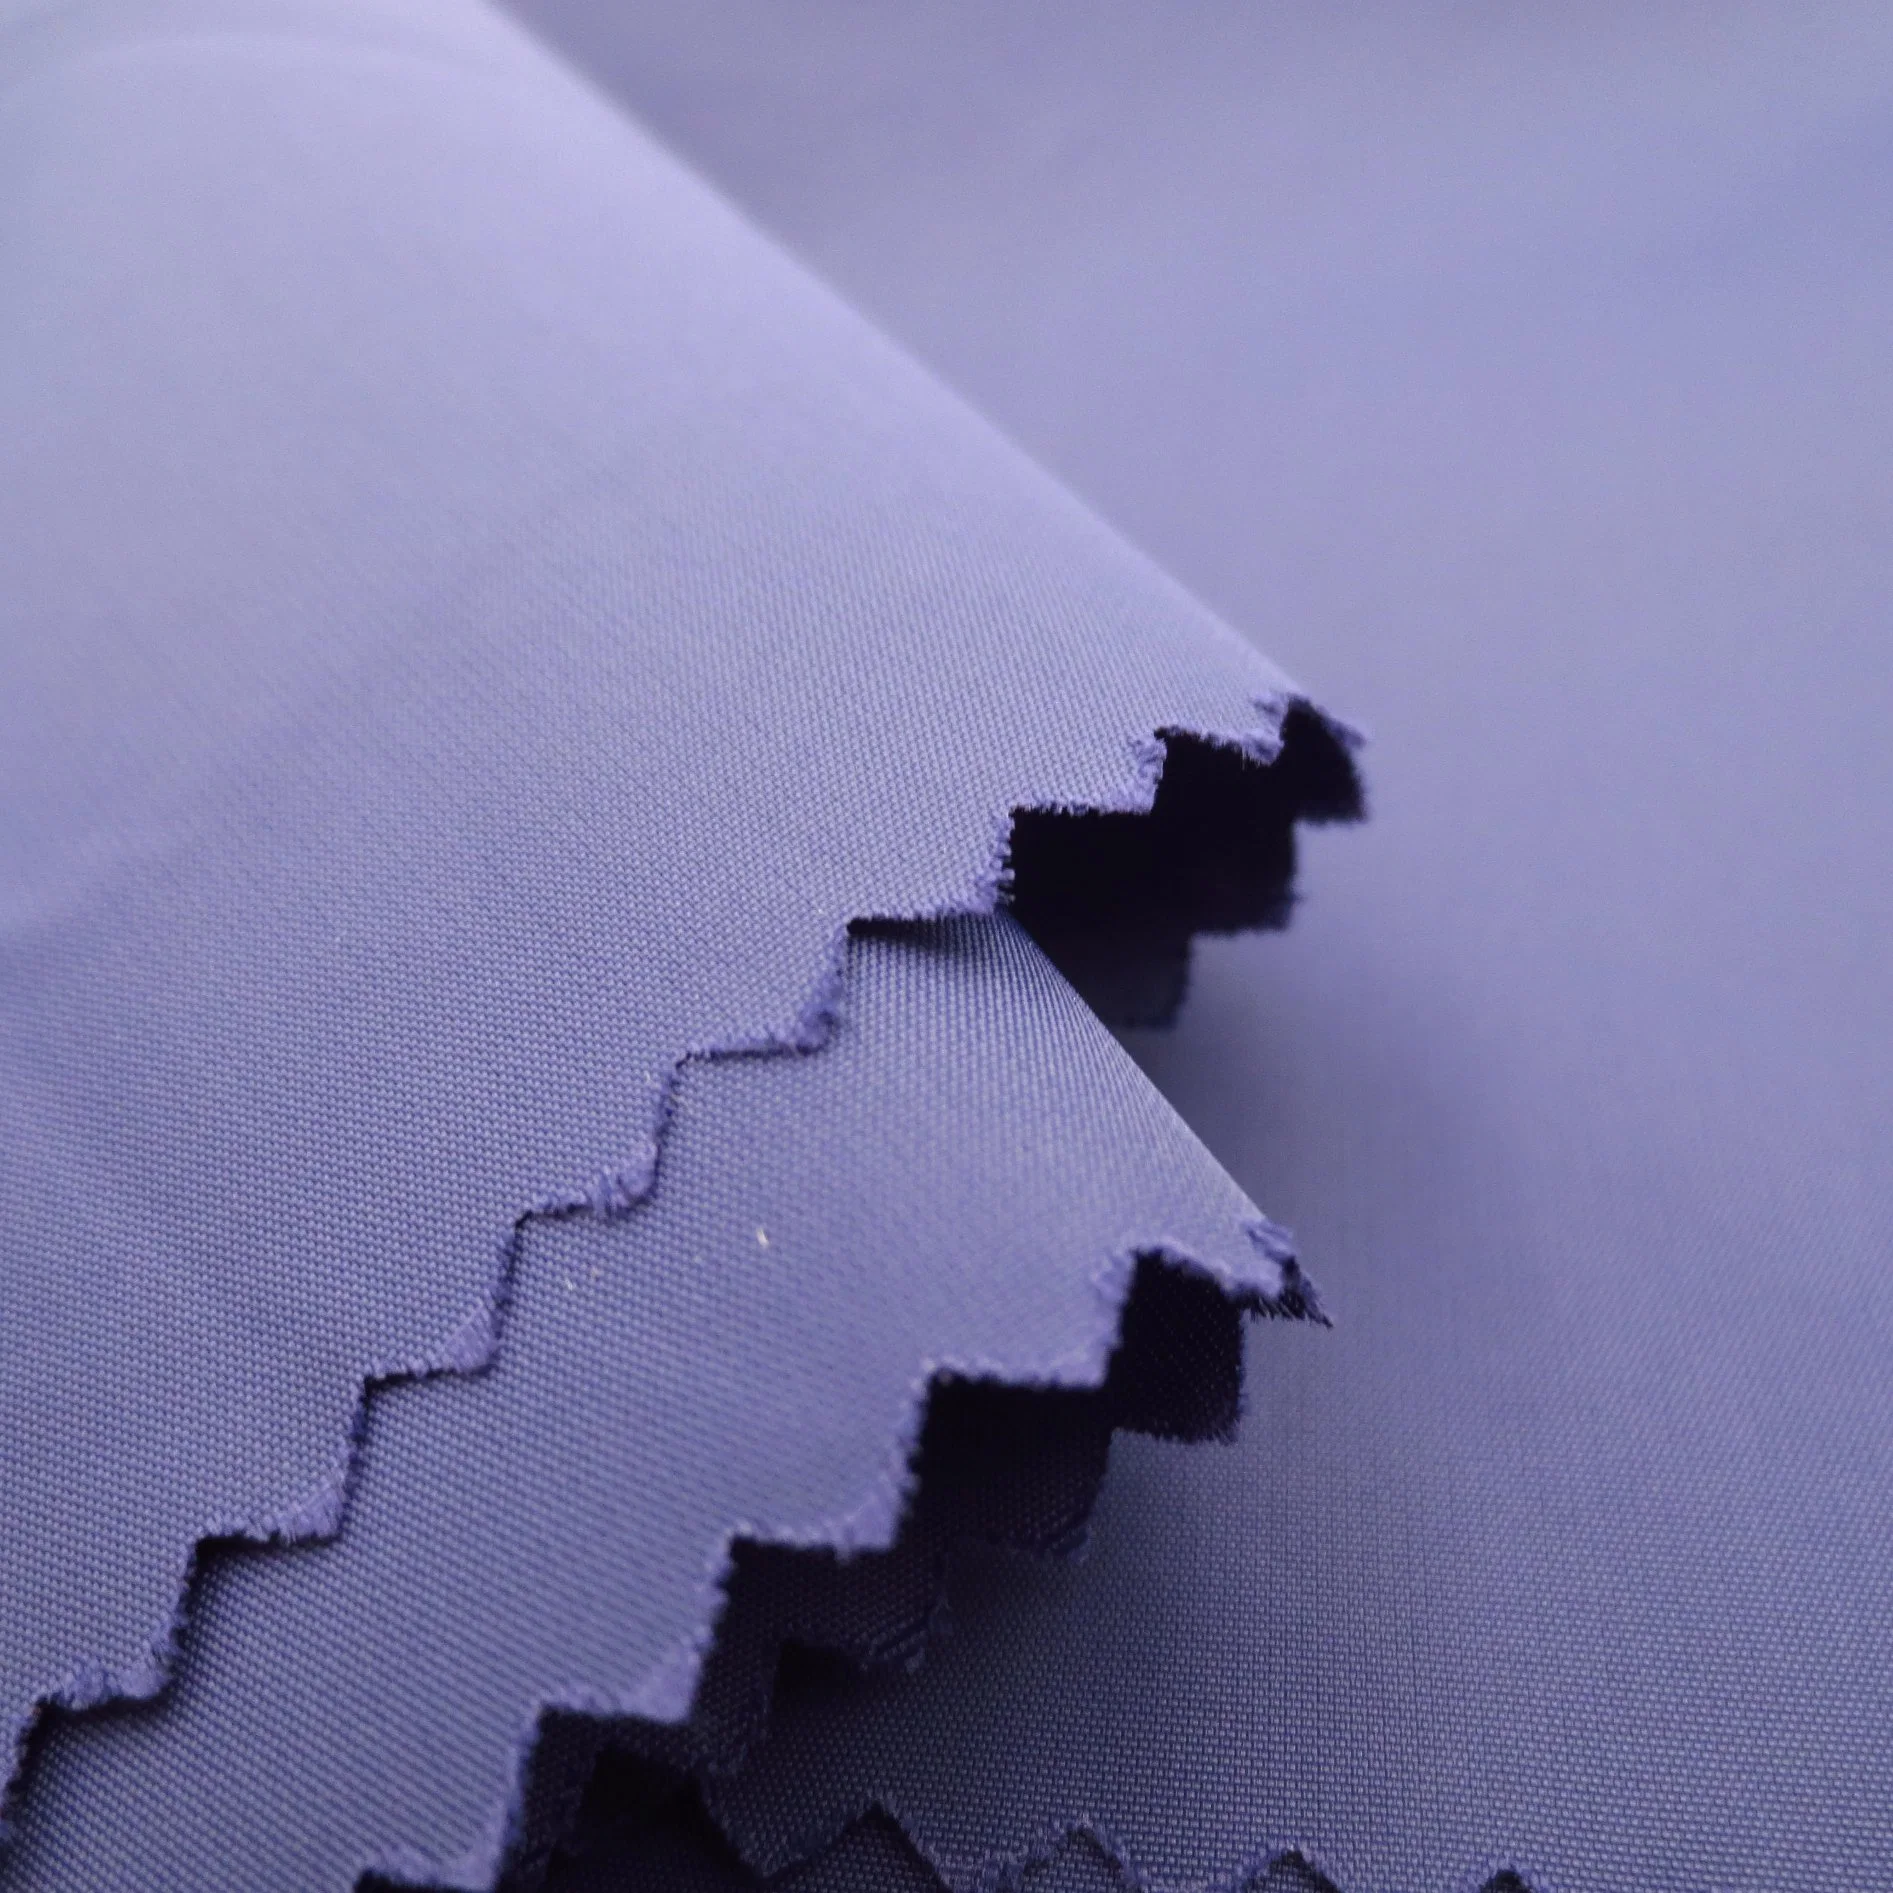 Tissu jacquard imperméable en polyester/nylon/spandex extensible recyclé tissé pour manteau, veste et uniforme.